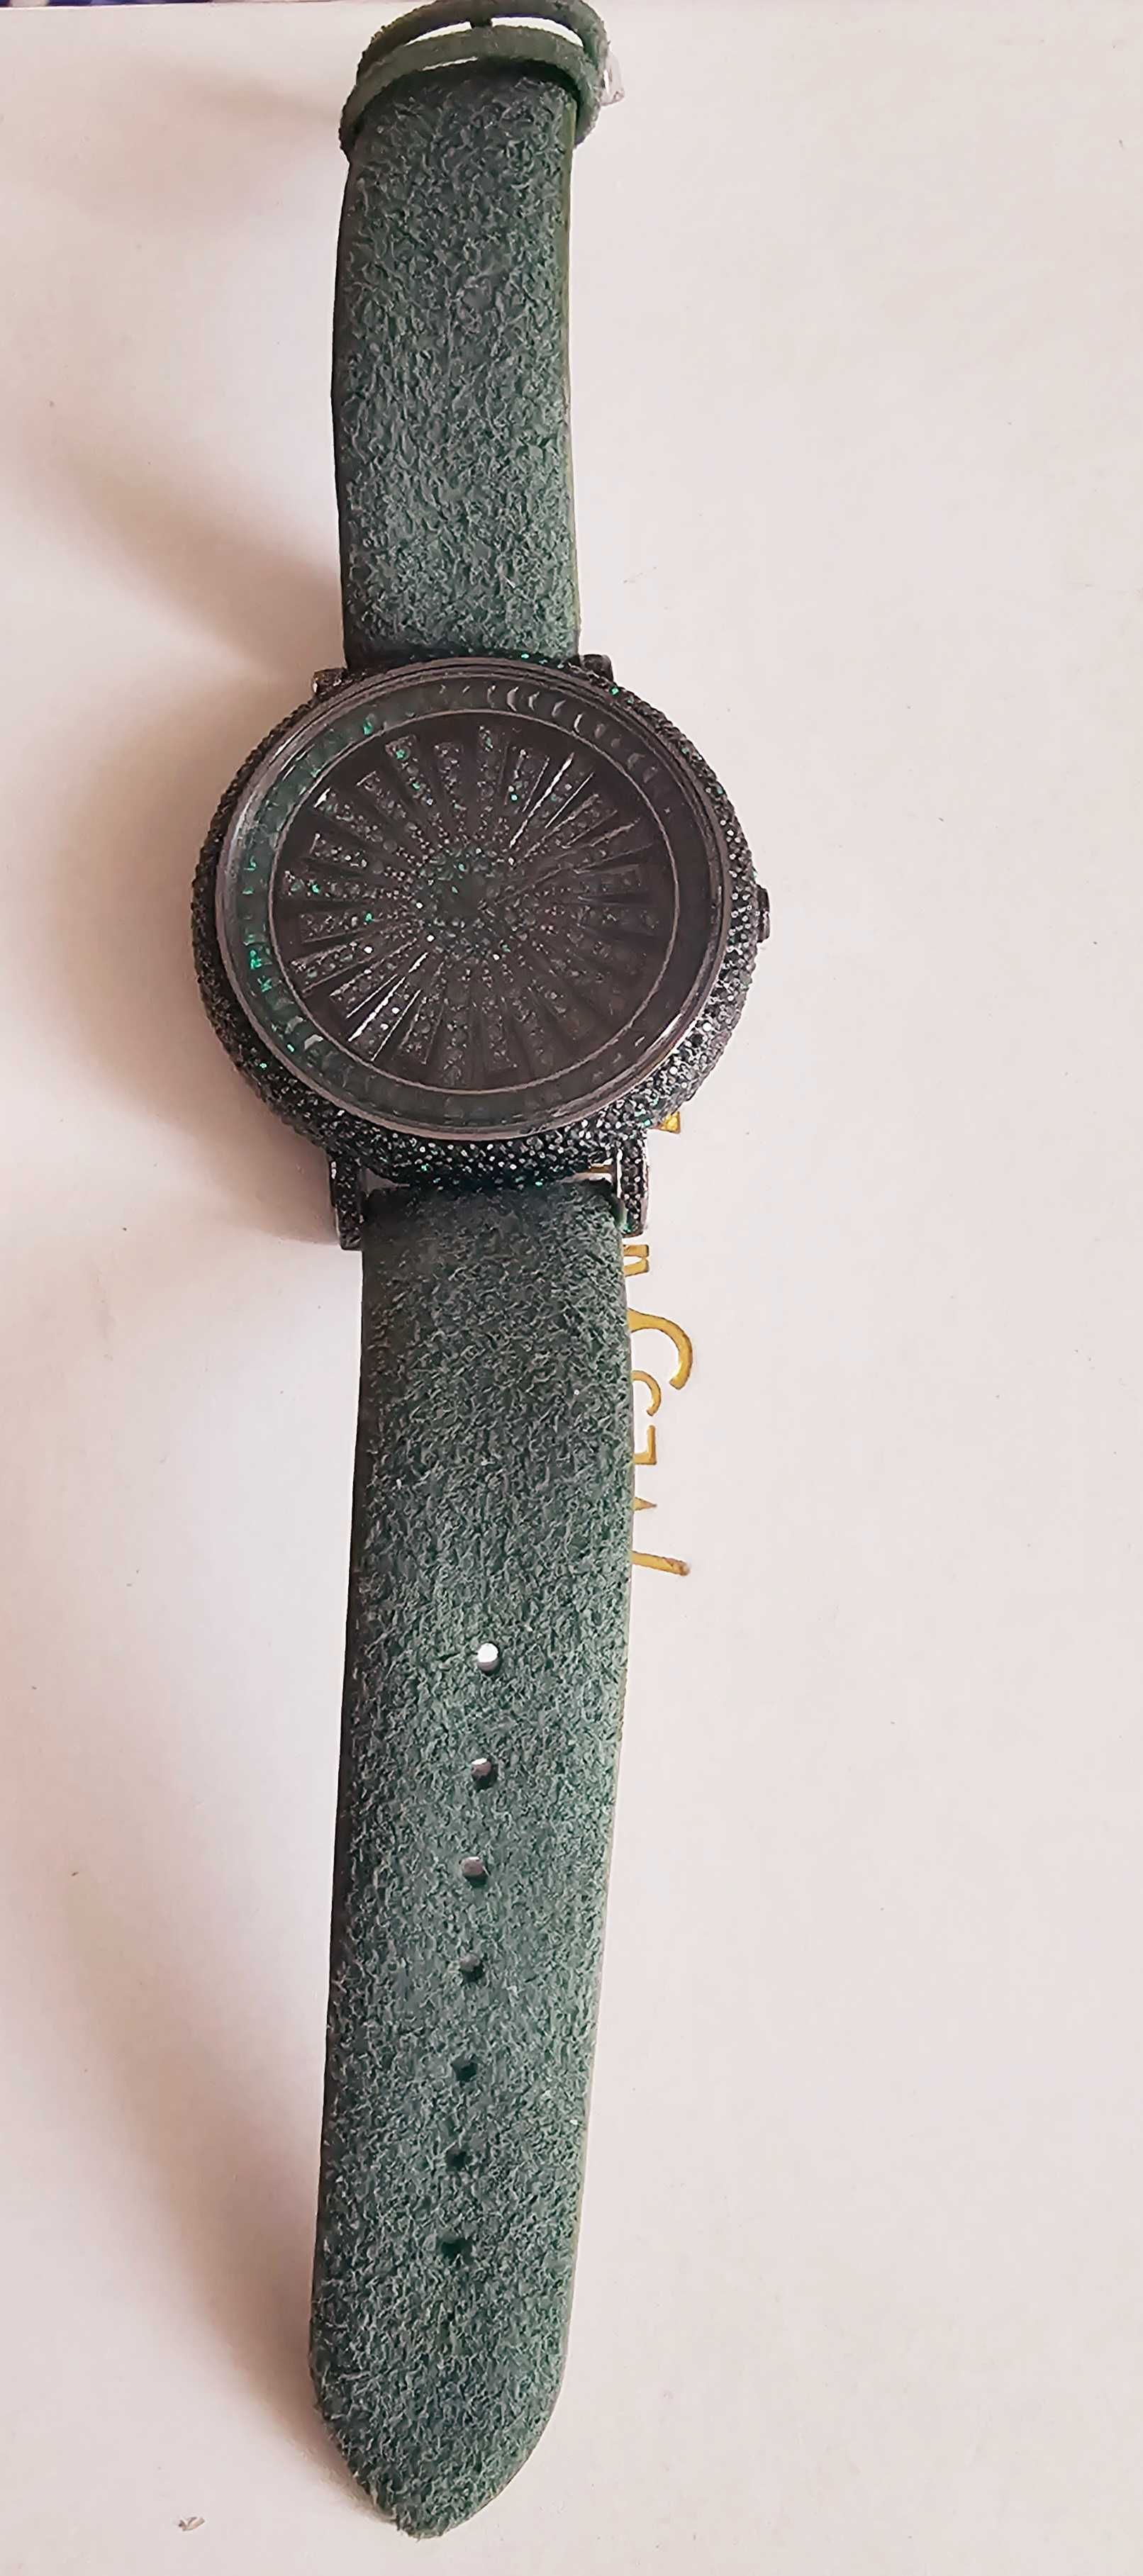 Часы под Версаче зеленые